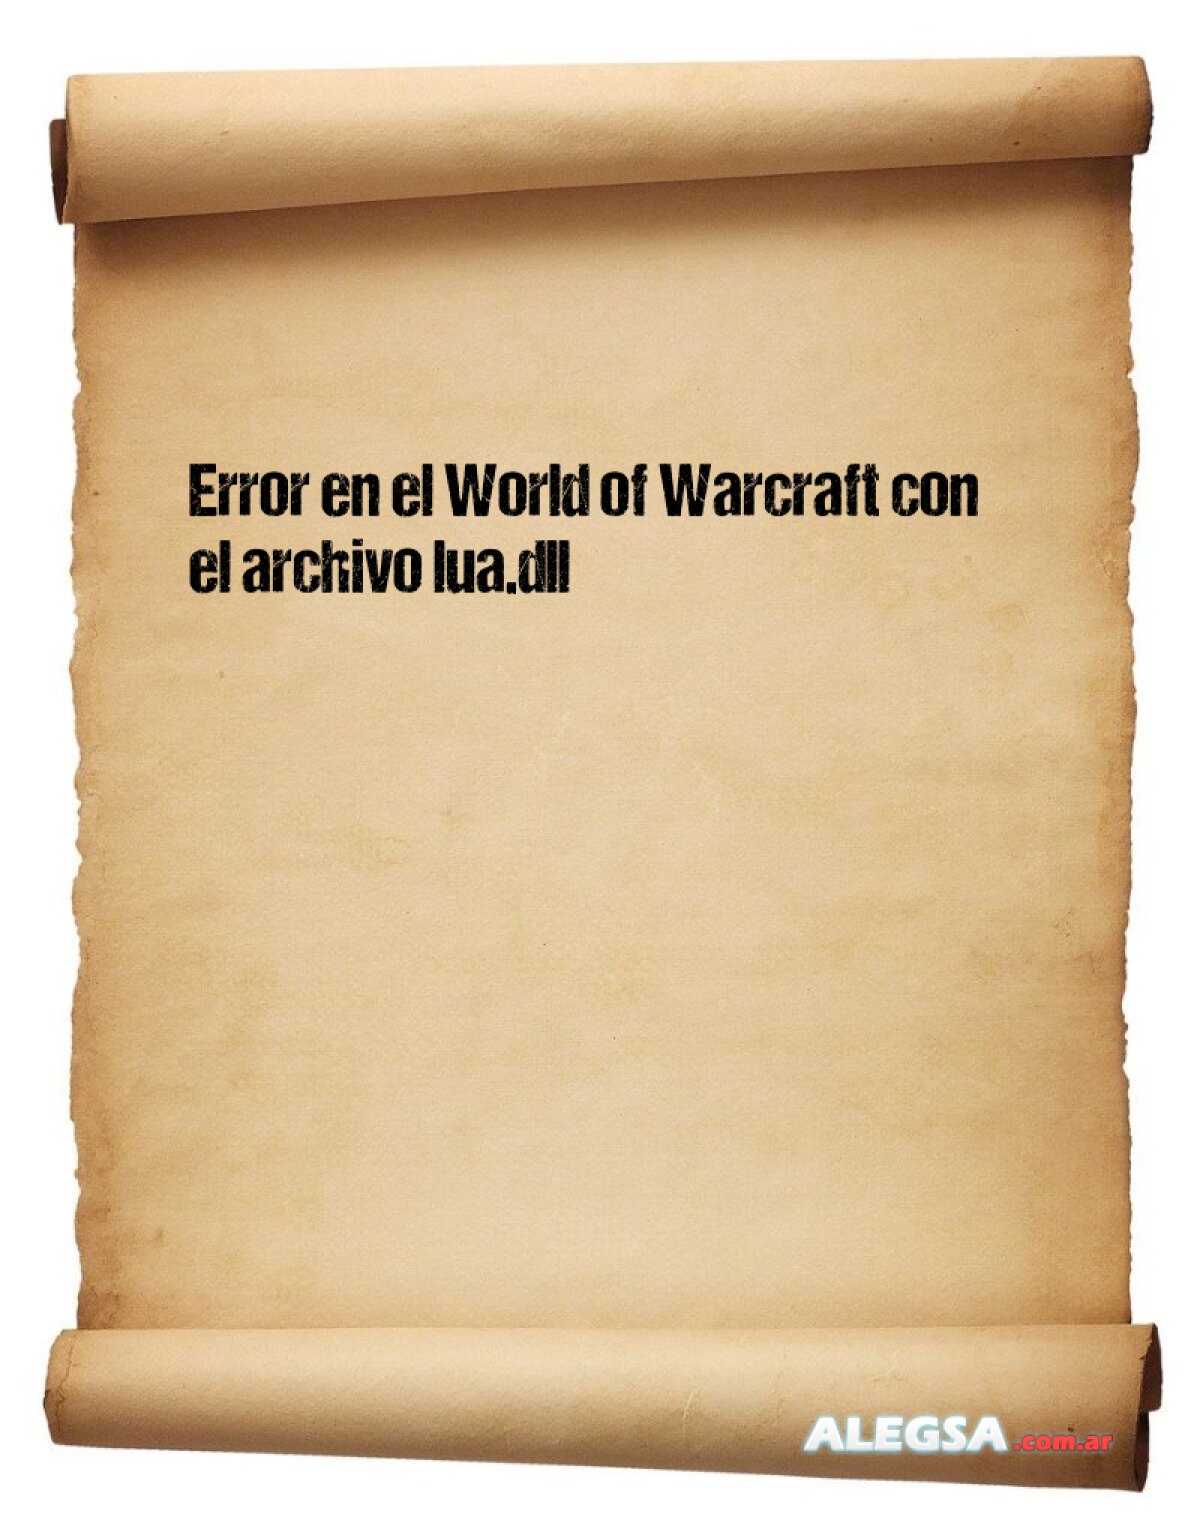 Error en el World of Warcraft con el archivo lua.dll